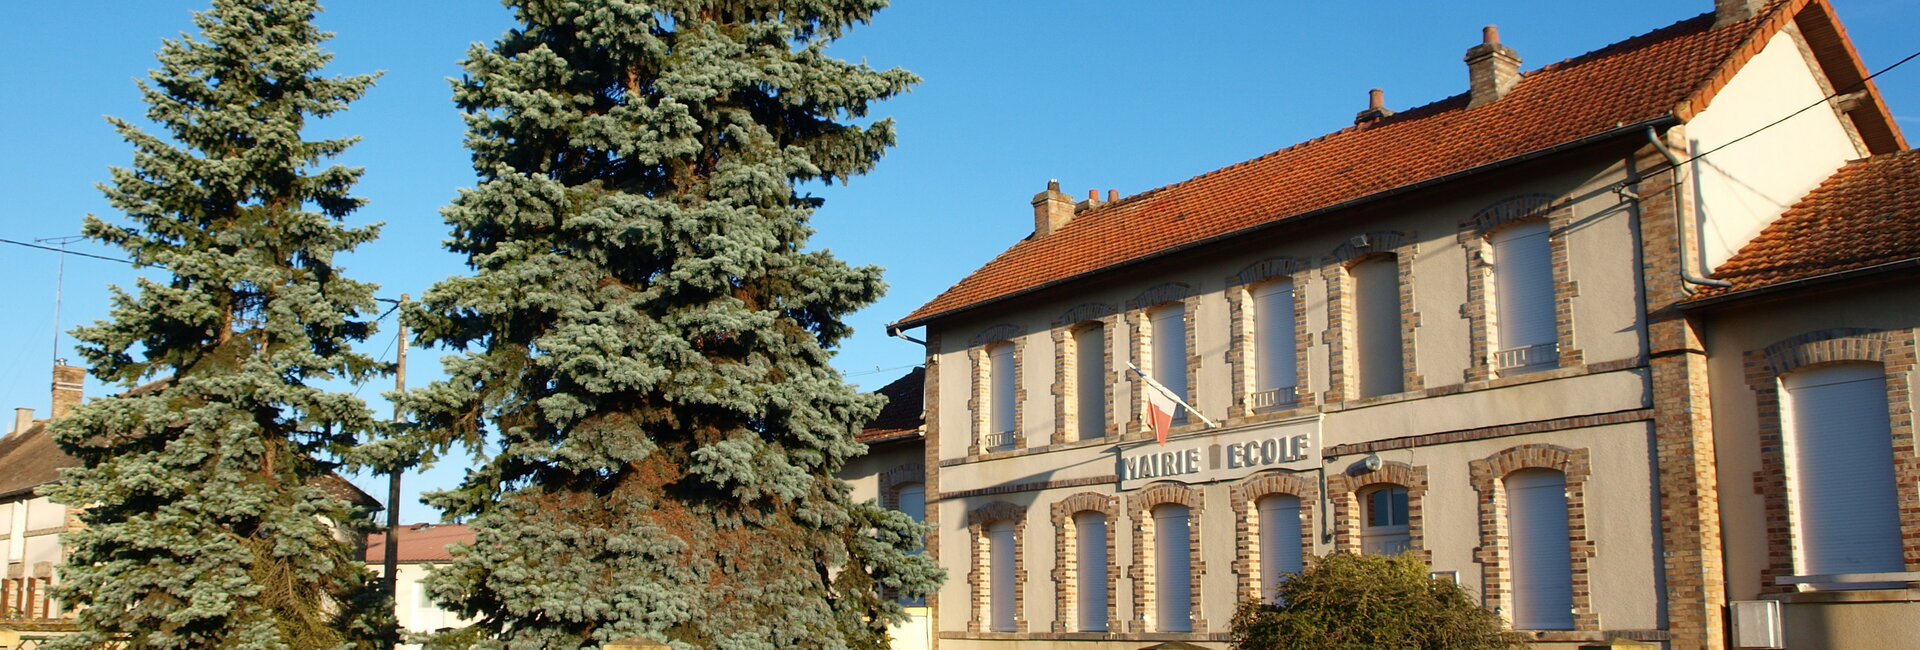 Les comptes-rendus du conseil municipal de Villebougis (89) Yonne